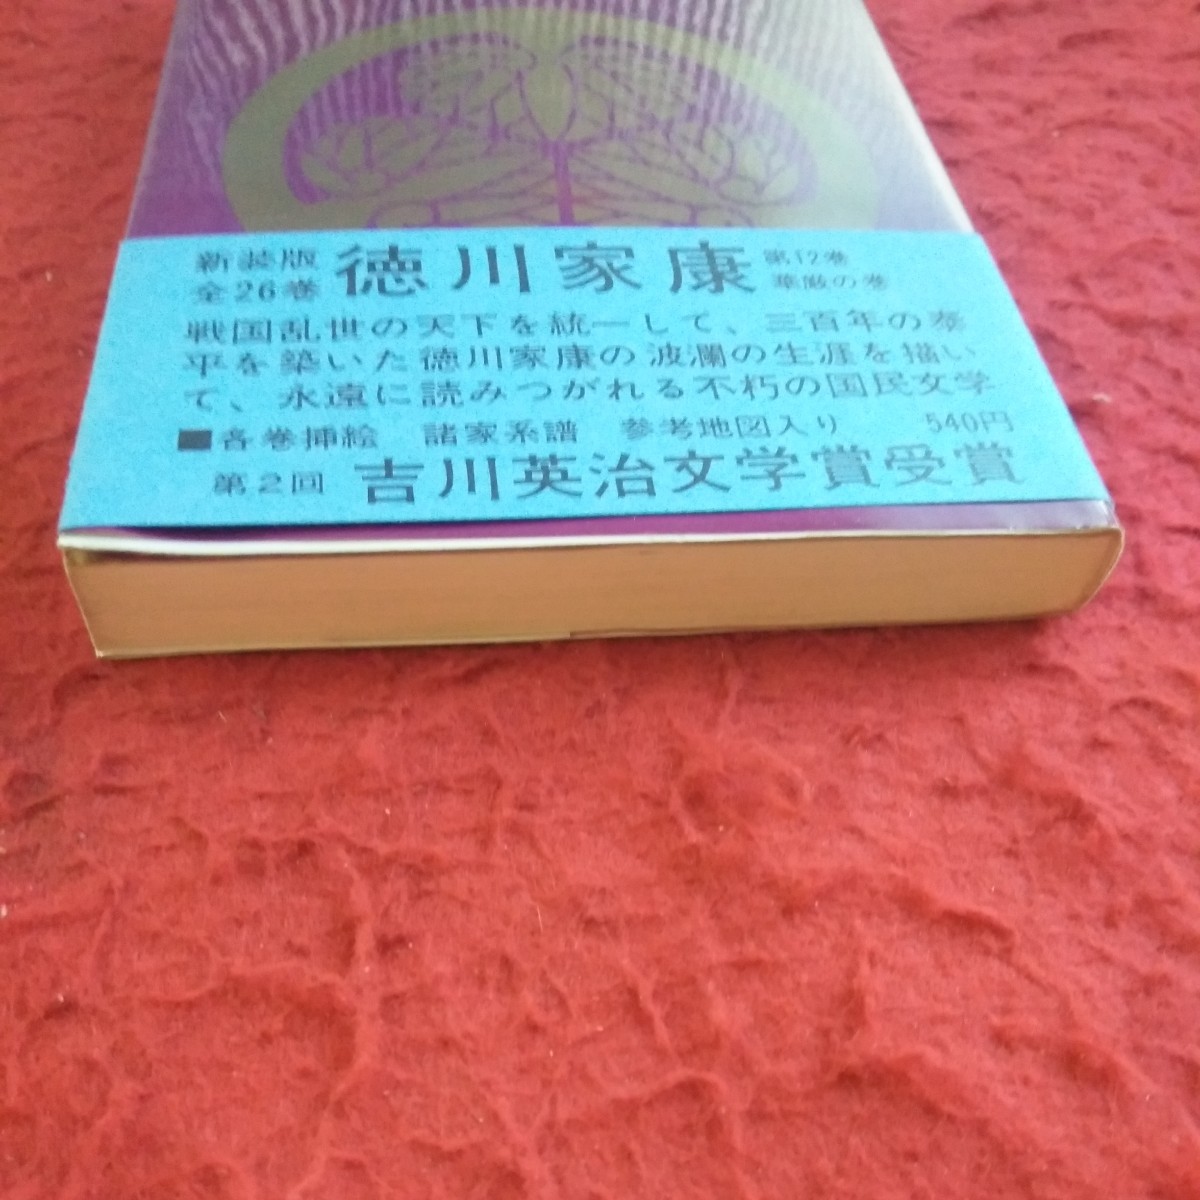 c-315 добродетель река дом .12... шт Yamaoka Sohachi новый оборудование версия все 26 шт Yoshikawa Eiji литературная премия выигрыш .. фирма Showa 53 год выпуск *8